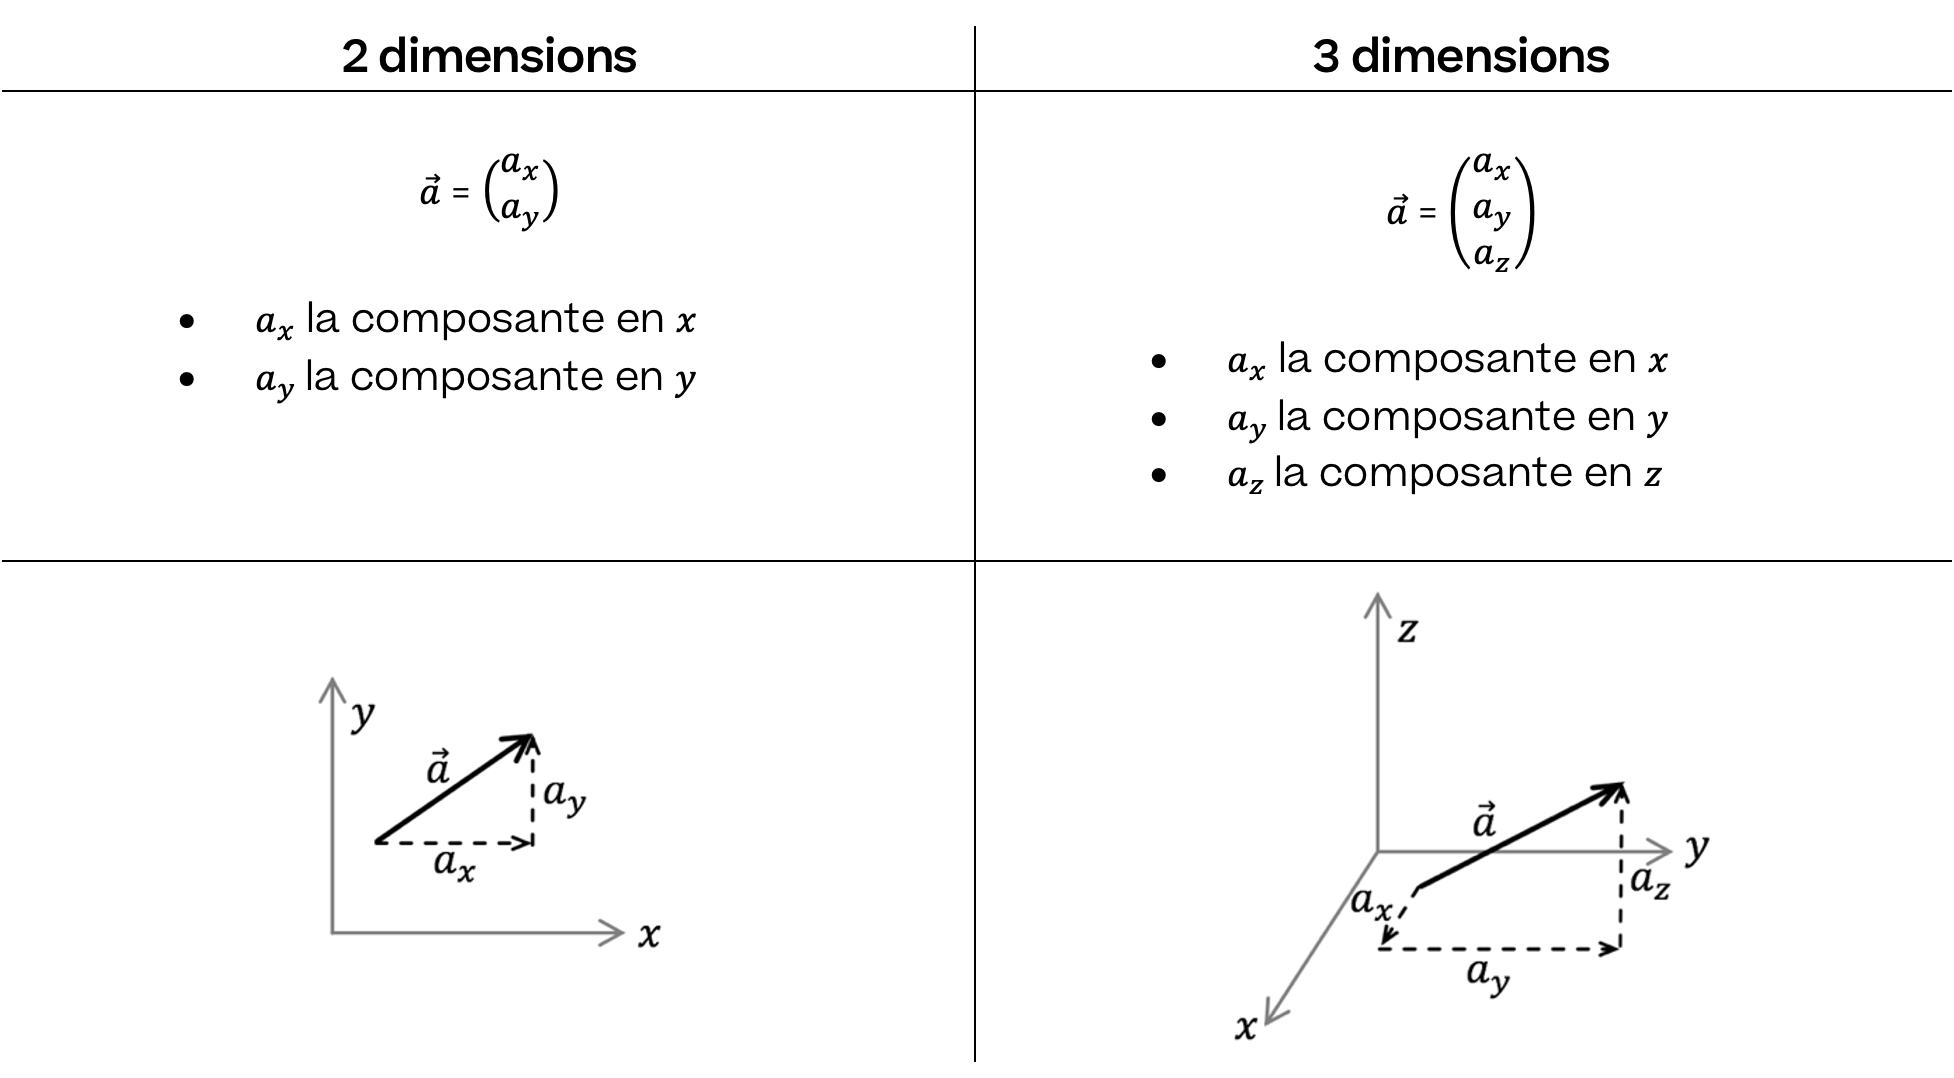 Mathématiques; Introduction; 4e Collège; Composantes de vecteurs